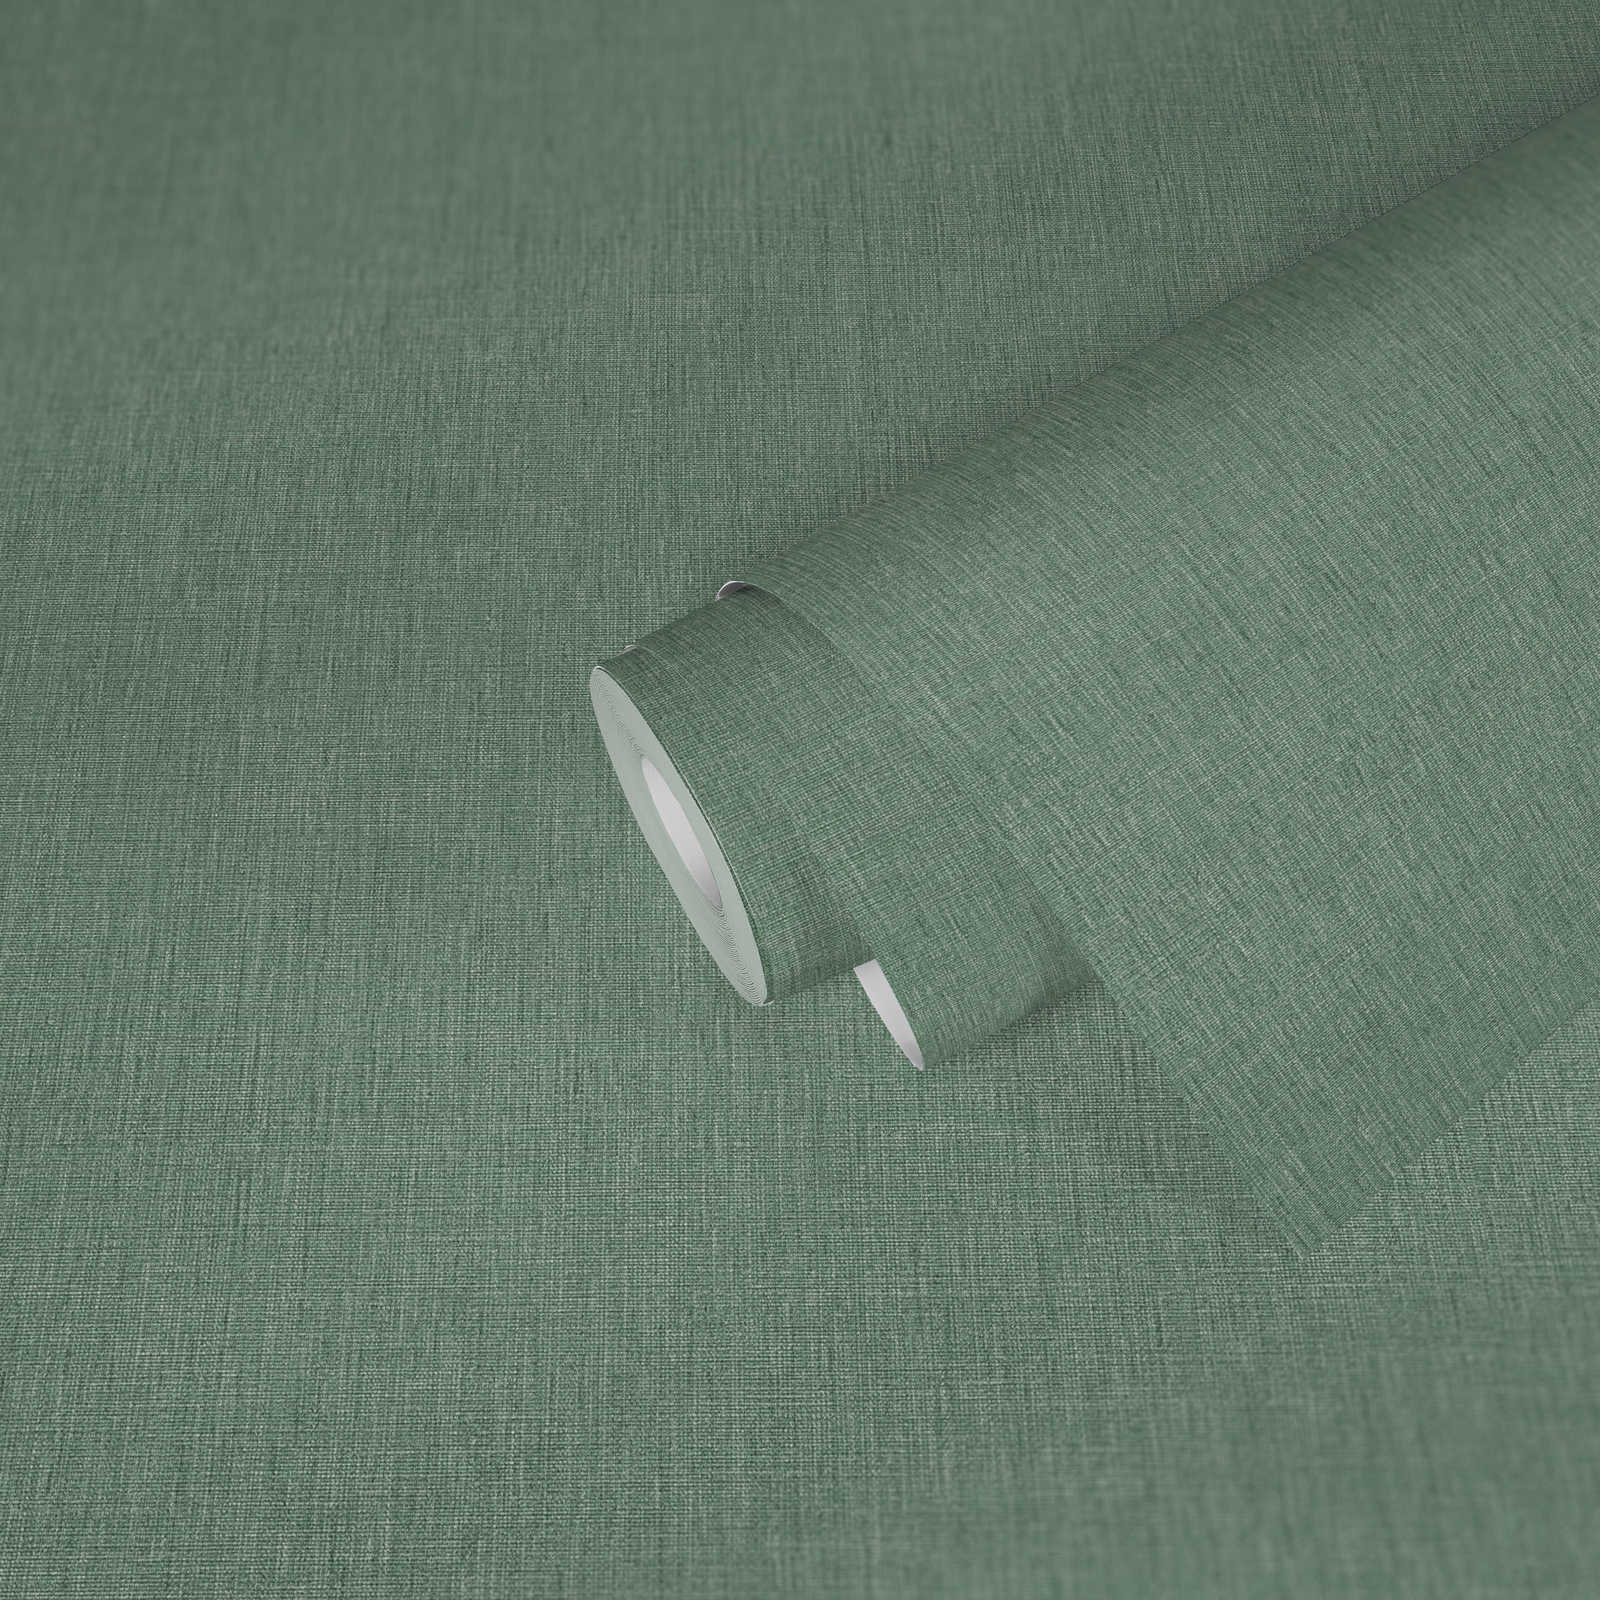             Eenheidsbehang in textiellook met textuur - groen
        